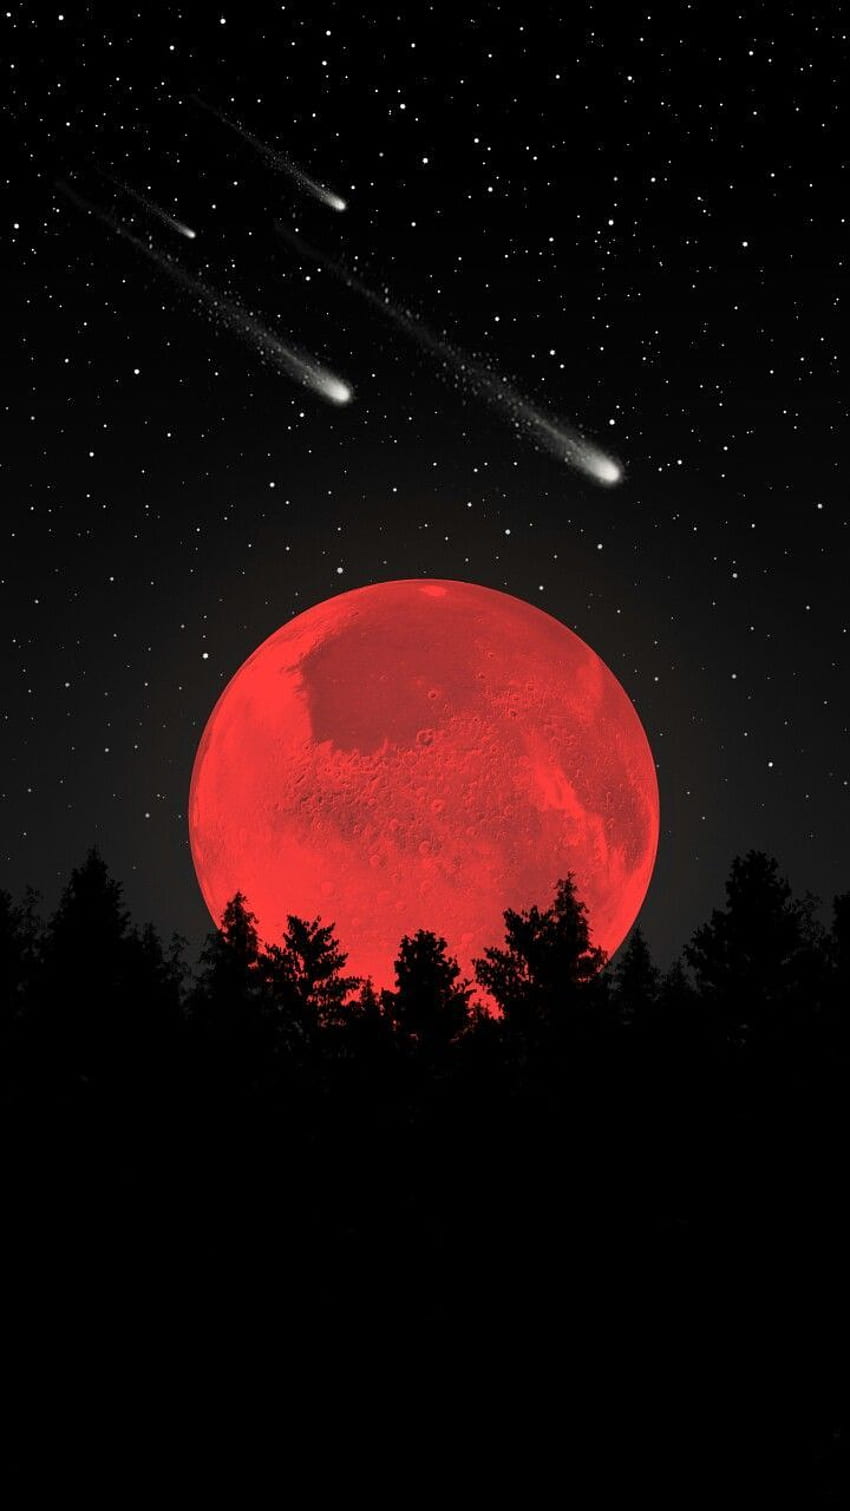 Vào một đêm trăng đỏ, bạn sẽ cảm thấy hoàn toàn mê hoặc với không khí bí ẩn và phong phú của bầu trời đêm. Trăng lên trong bầu trời đỏ rực lên như một đóa hoa hồng toả sáng trước mắt bạn. Những bức ảnh sẽ đưa bạn đến được những cảm xúc chân thực nhất của sự sống.